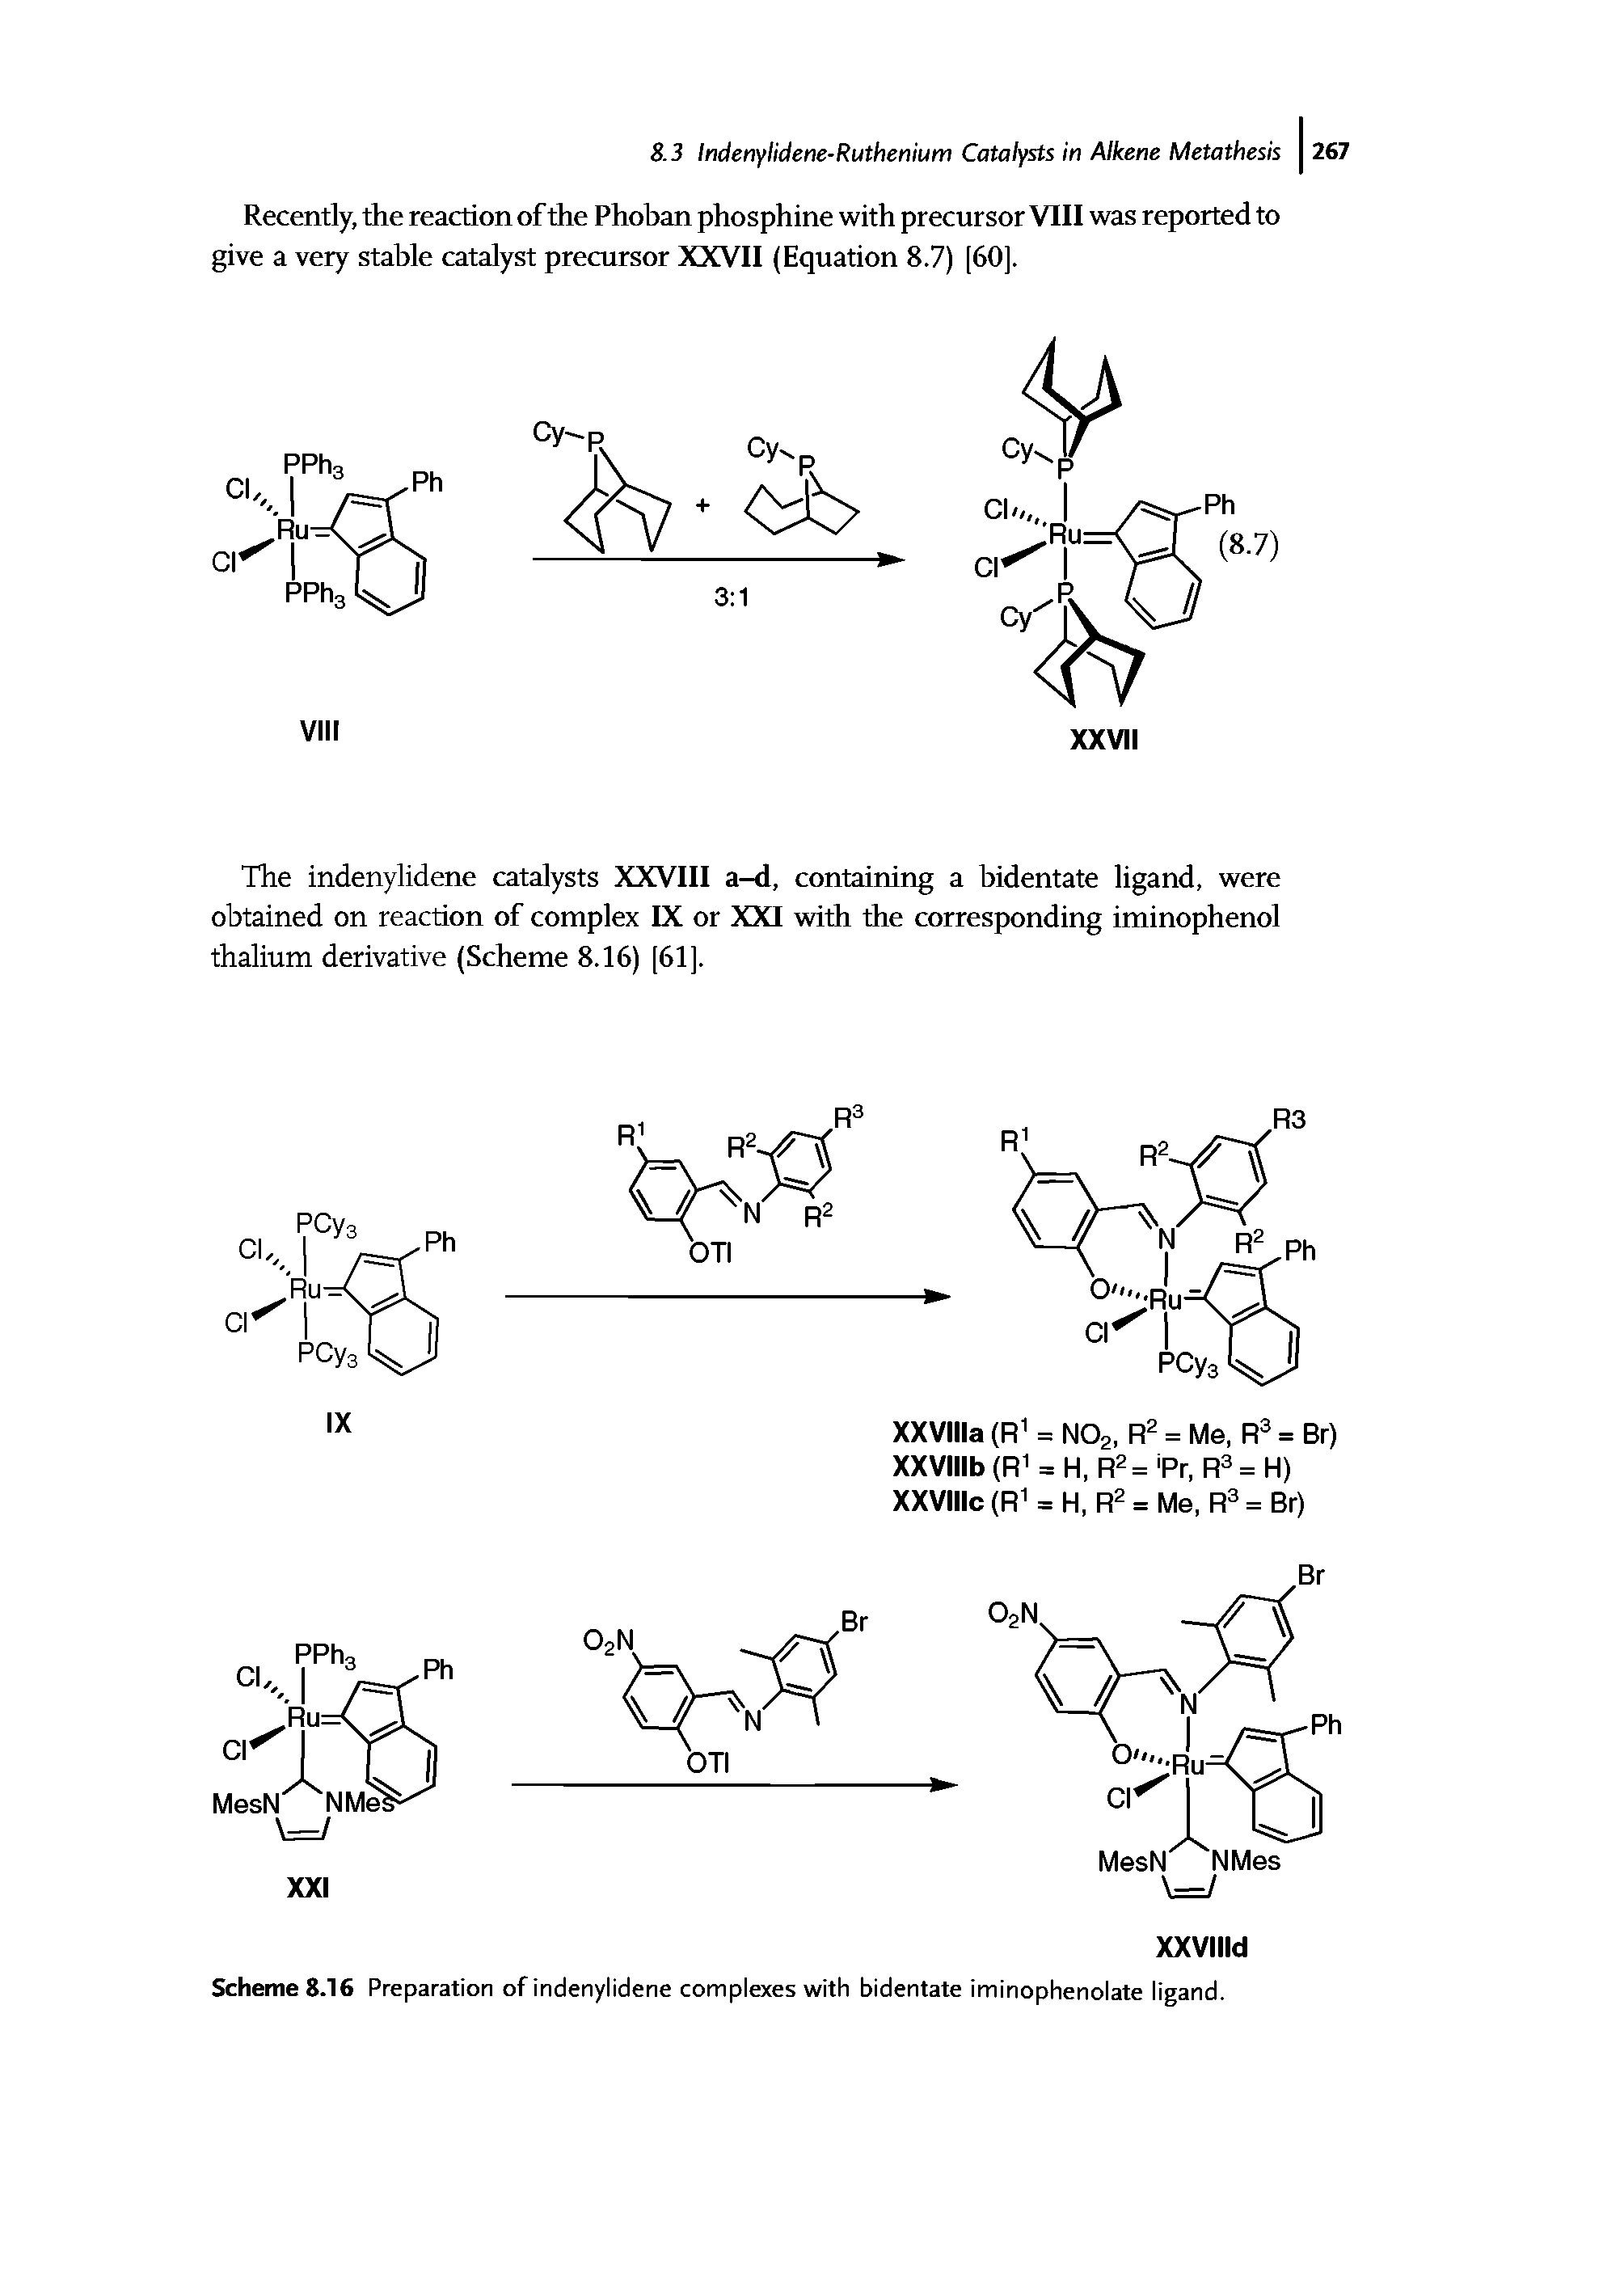 Scheme 8.16 Preparation of indenylidene complexes with bidentate iminophenolate ligand.